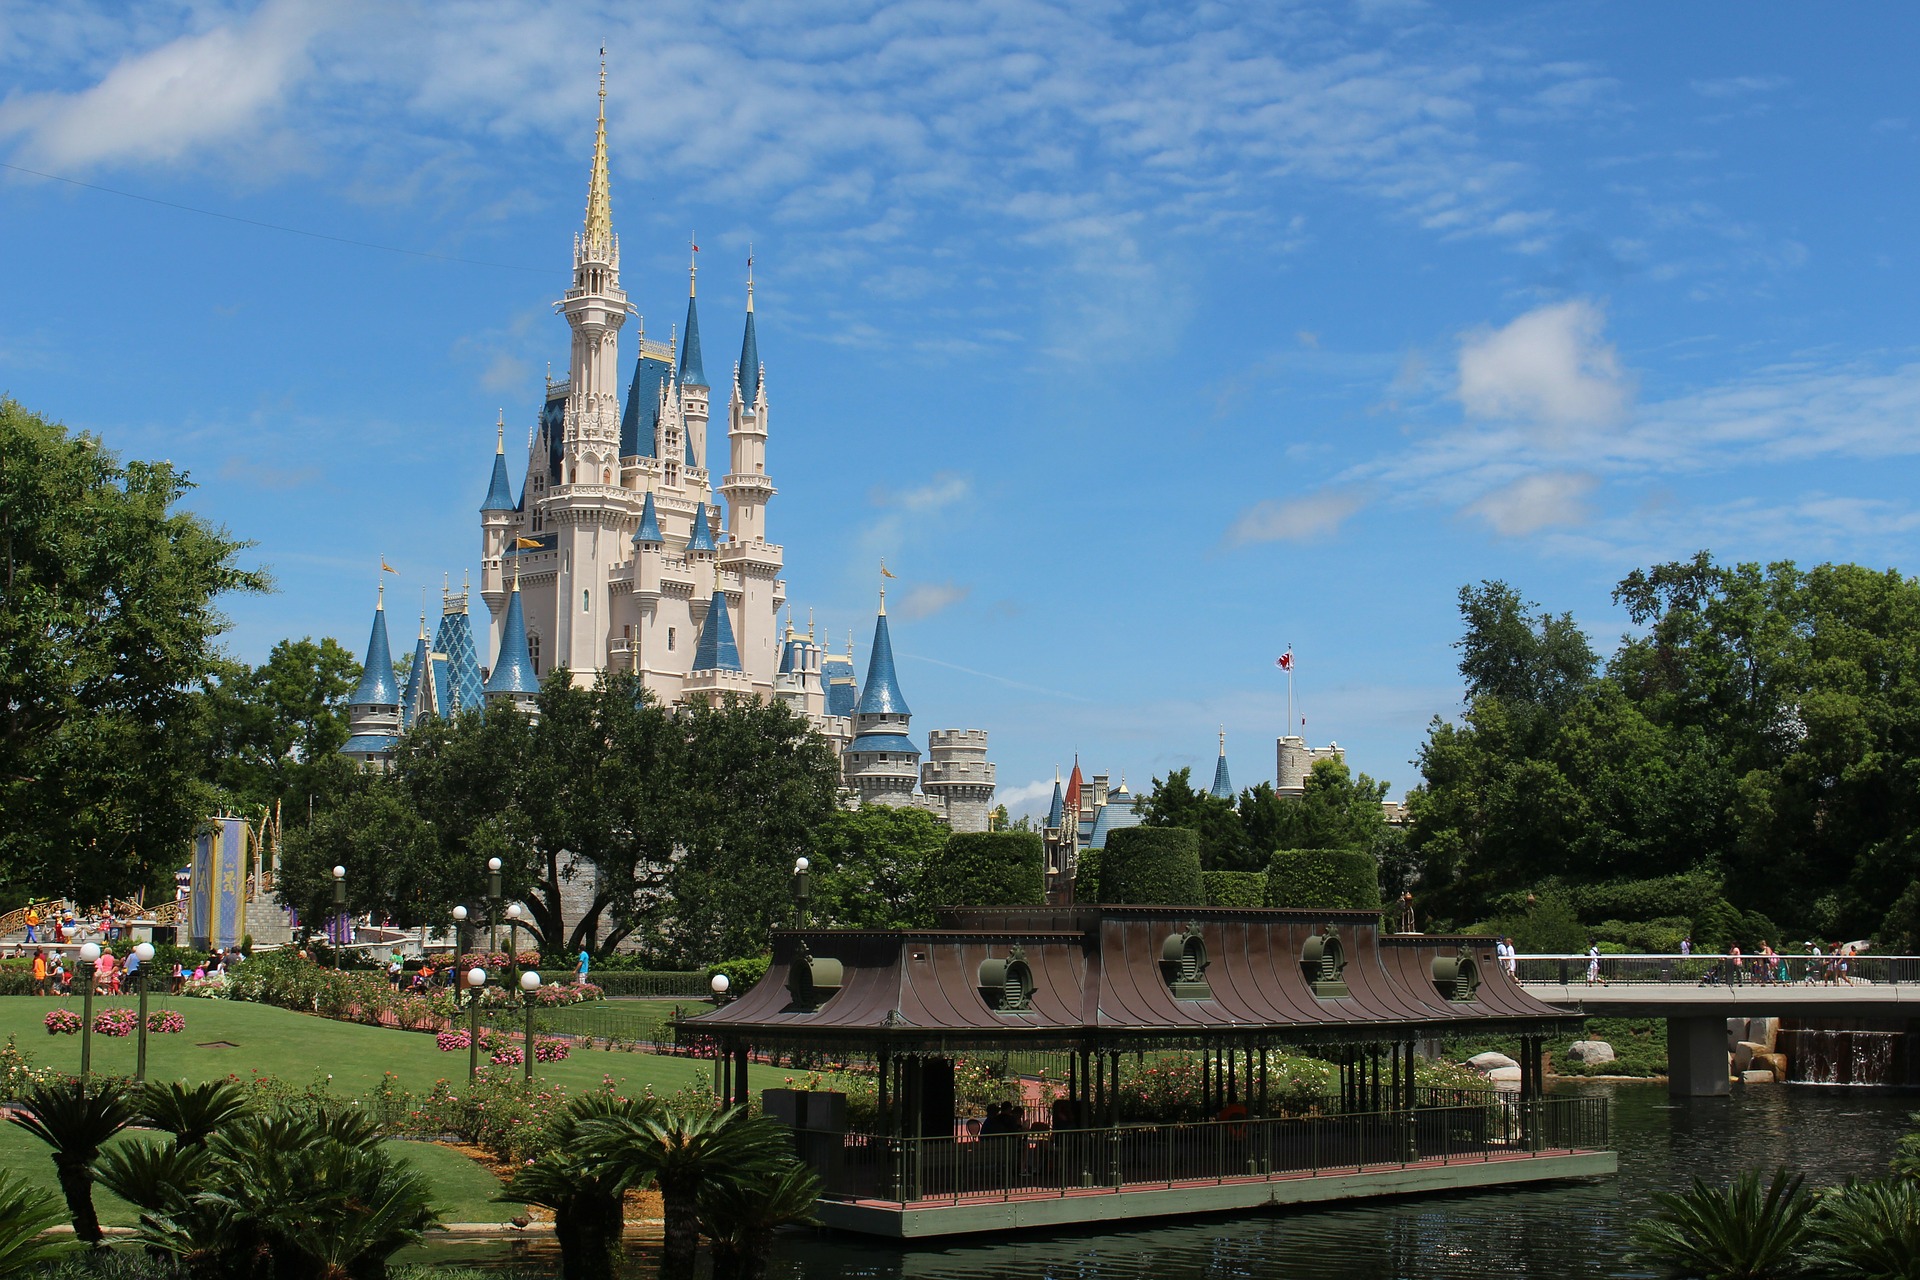 Walt Disney World Castle